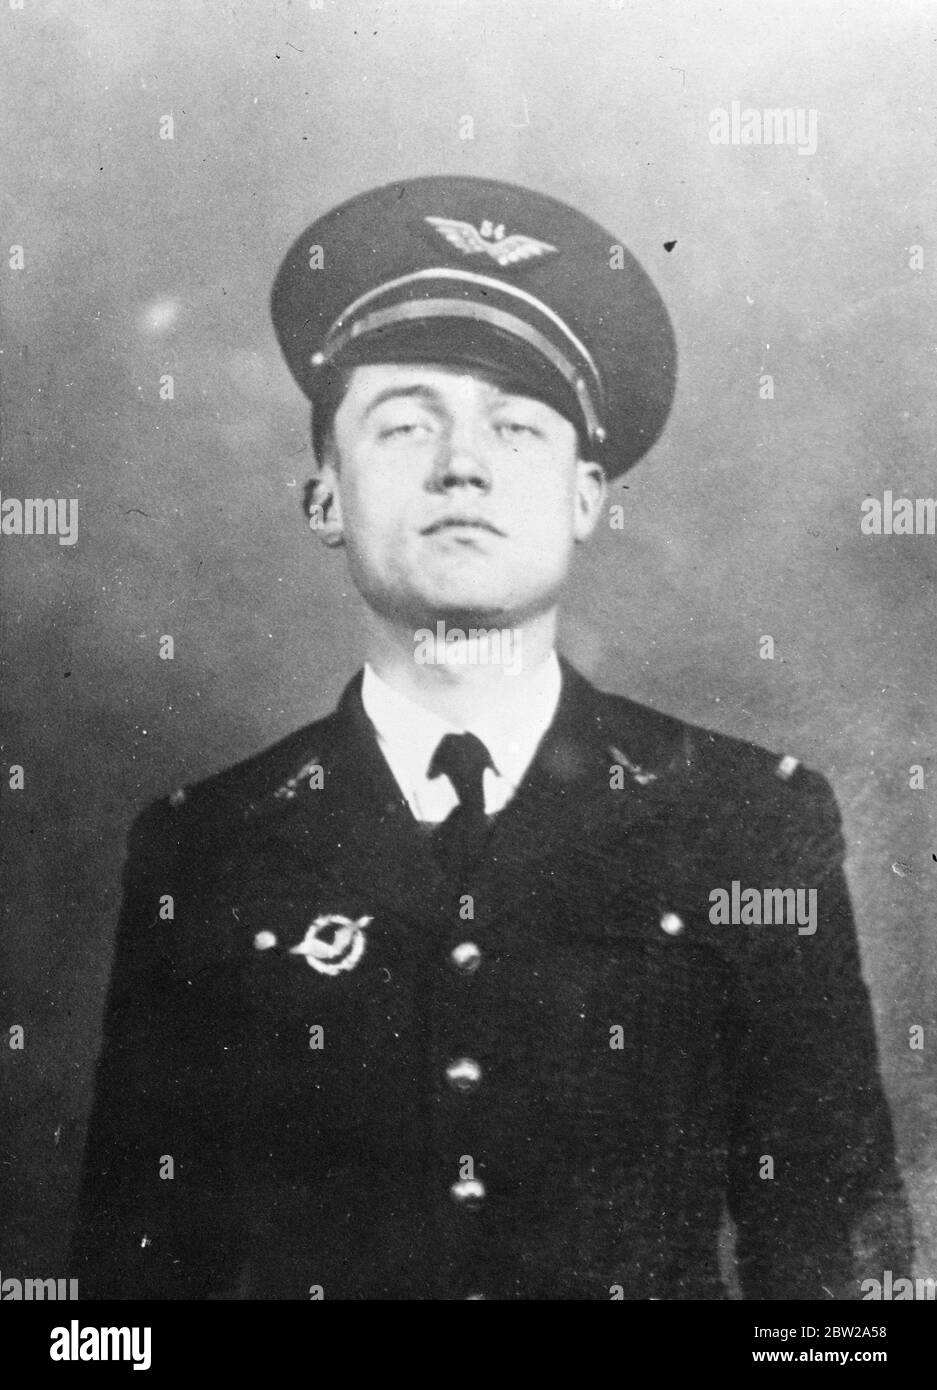 L'uomo dell'aeronautica francese è stato arrestato come "Cagoulard". L'aviatore sergente Raymond Cheron, dell'aviazione francese, è uno dei presunti membri dei Cagoulards (Hooded Men) arrestati dalla polizia francese. Come risultato delle scoperte a livello nazionale di depositi segreti di armi. 26 novembre 1937 Foto Stock